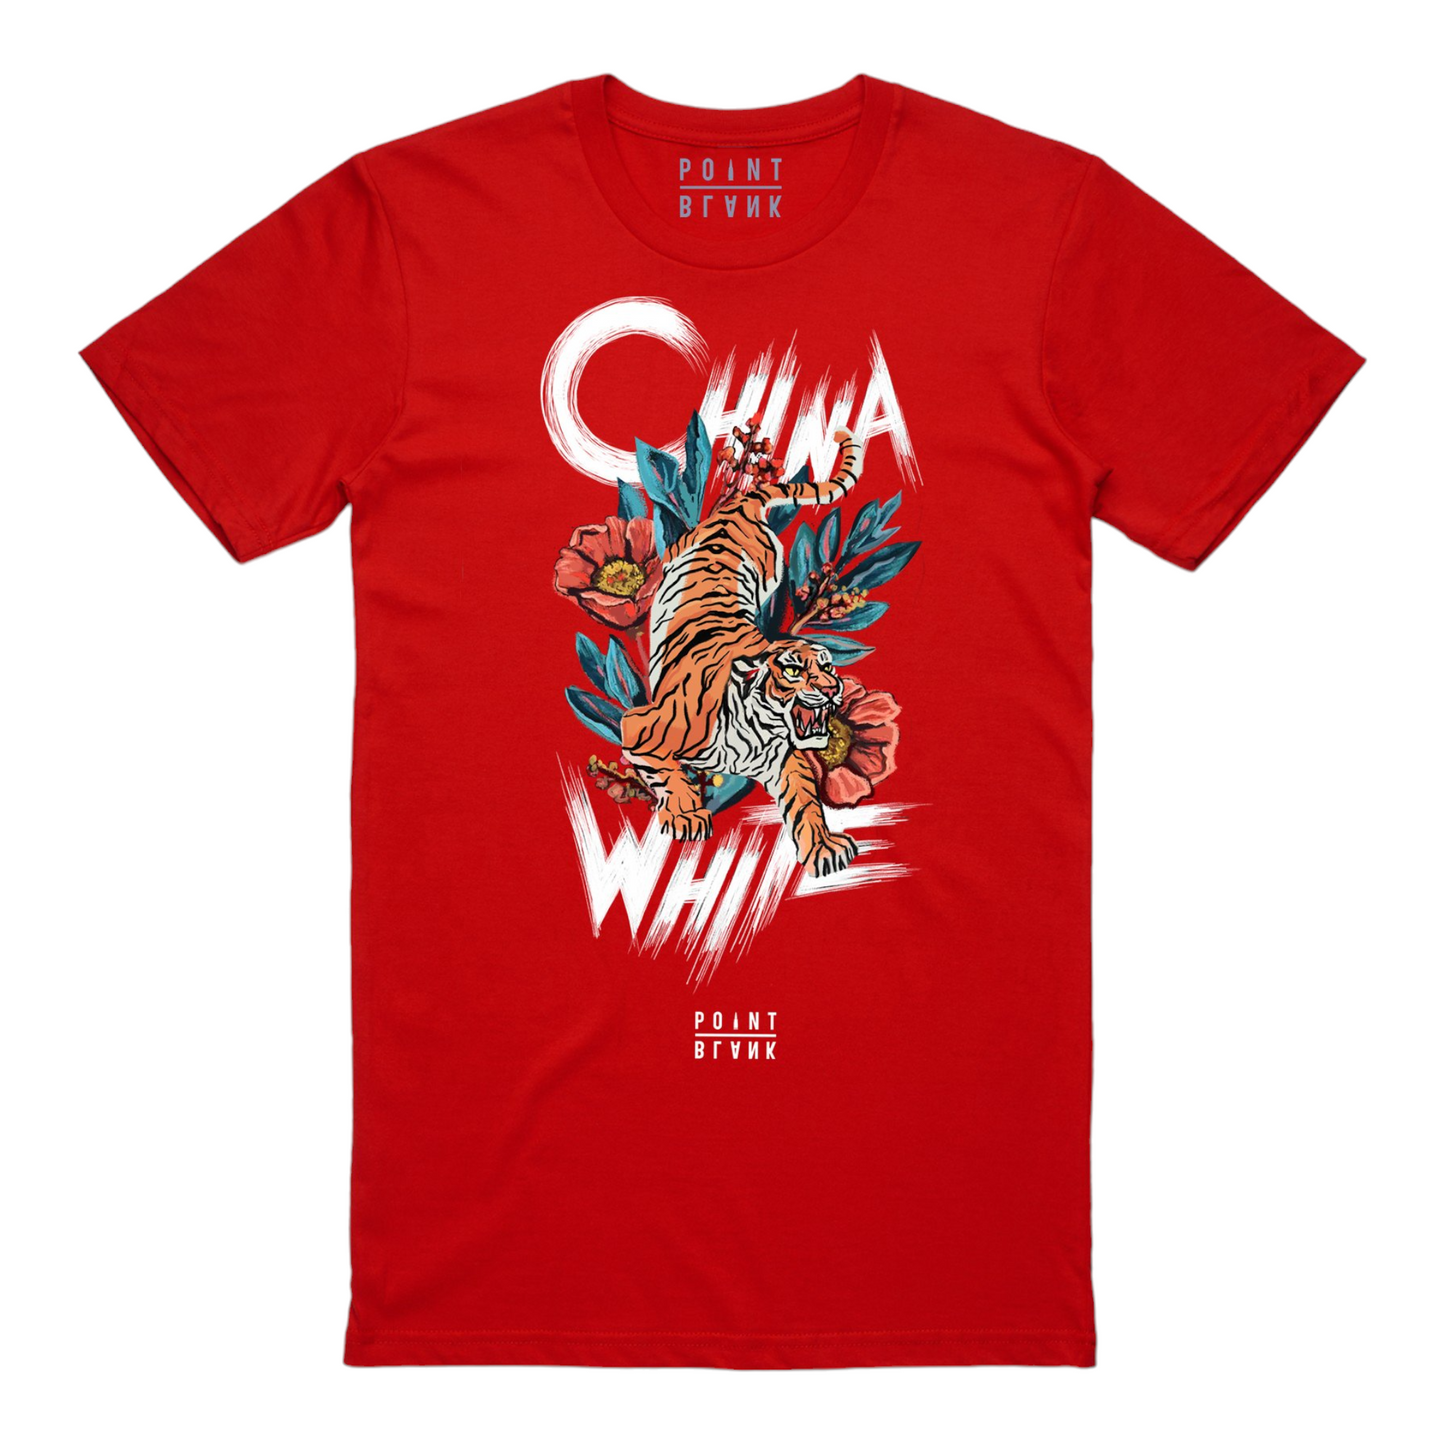 China White T-Shirt - Red